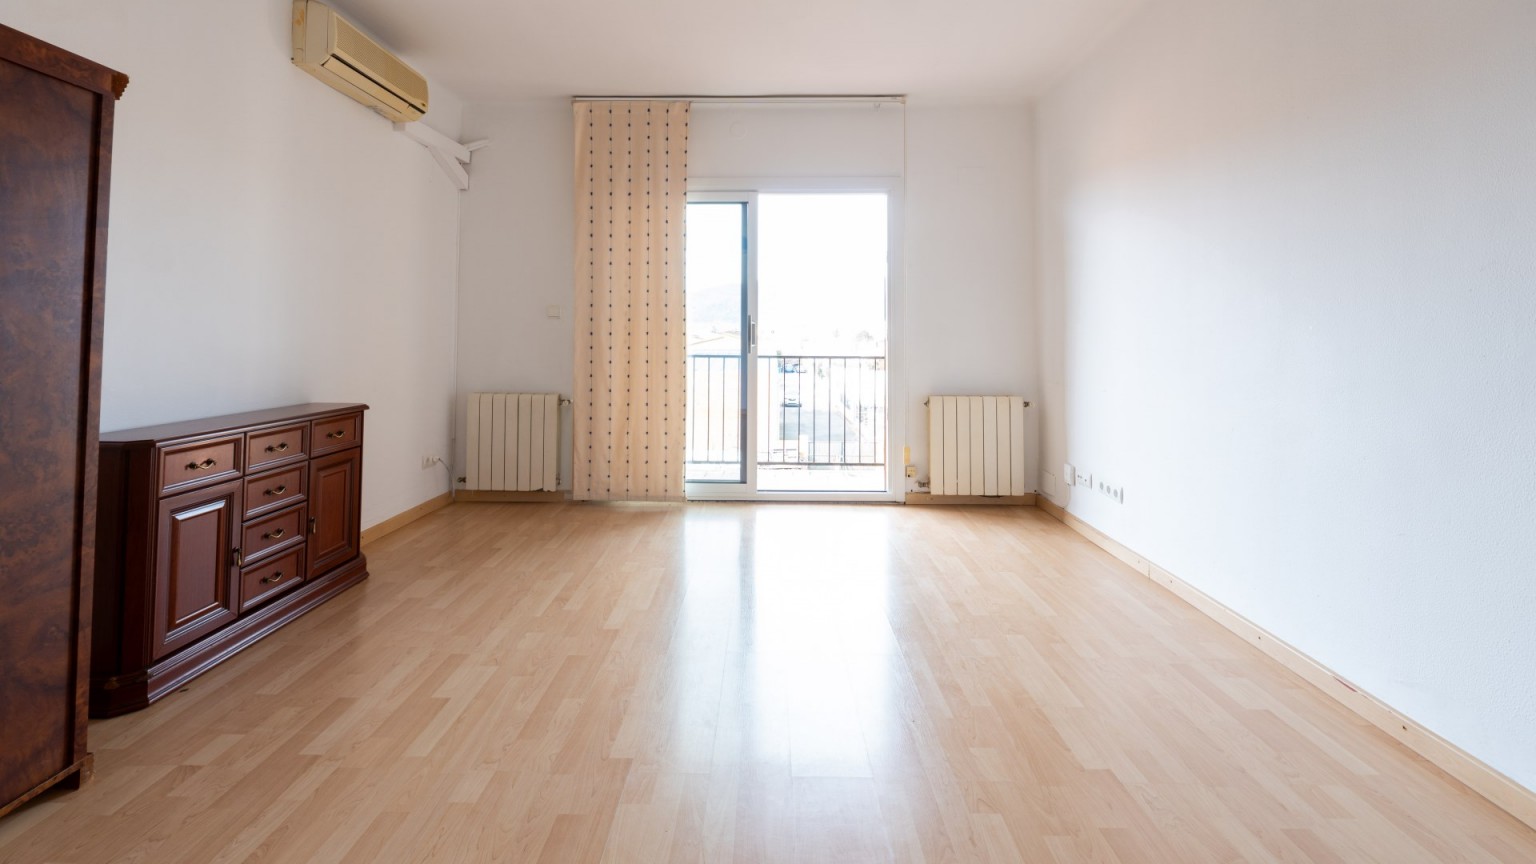 Appartement à vendre situé dans un quartier très calme au centre de la ville de Sant Gregori